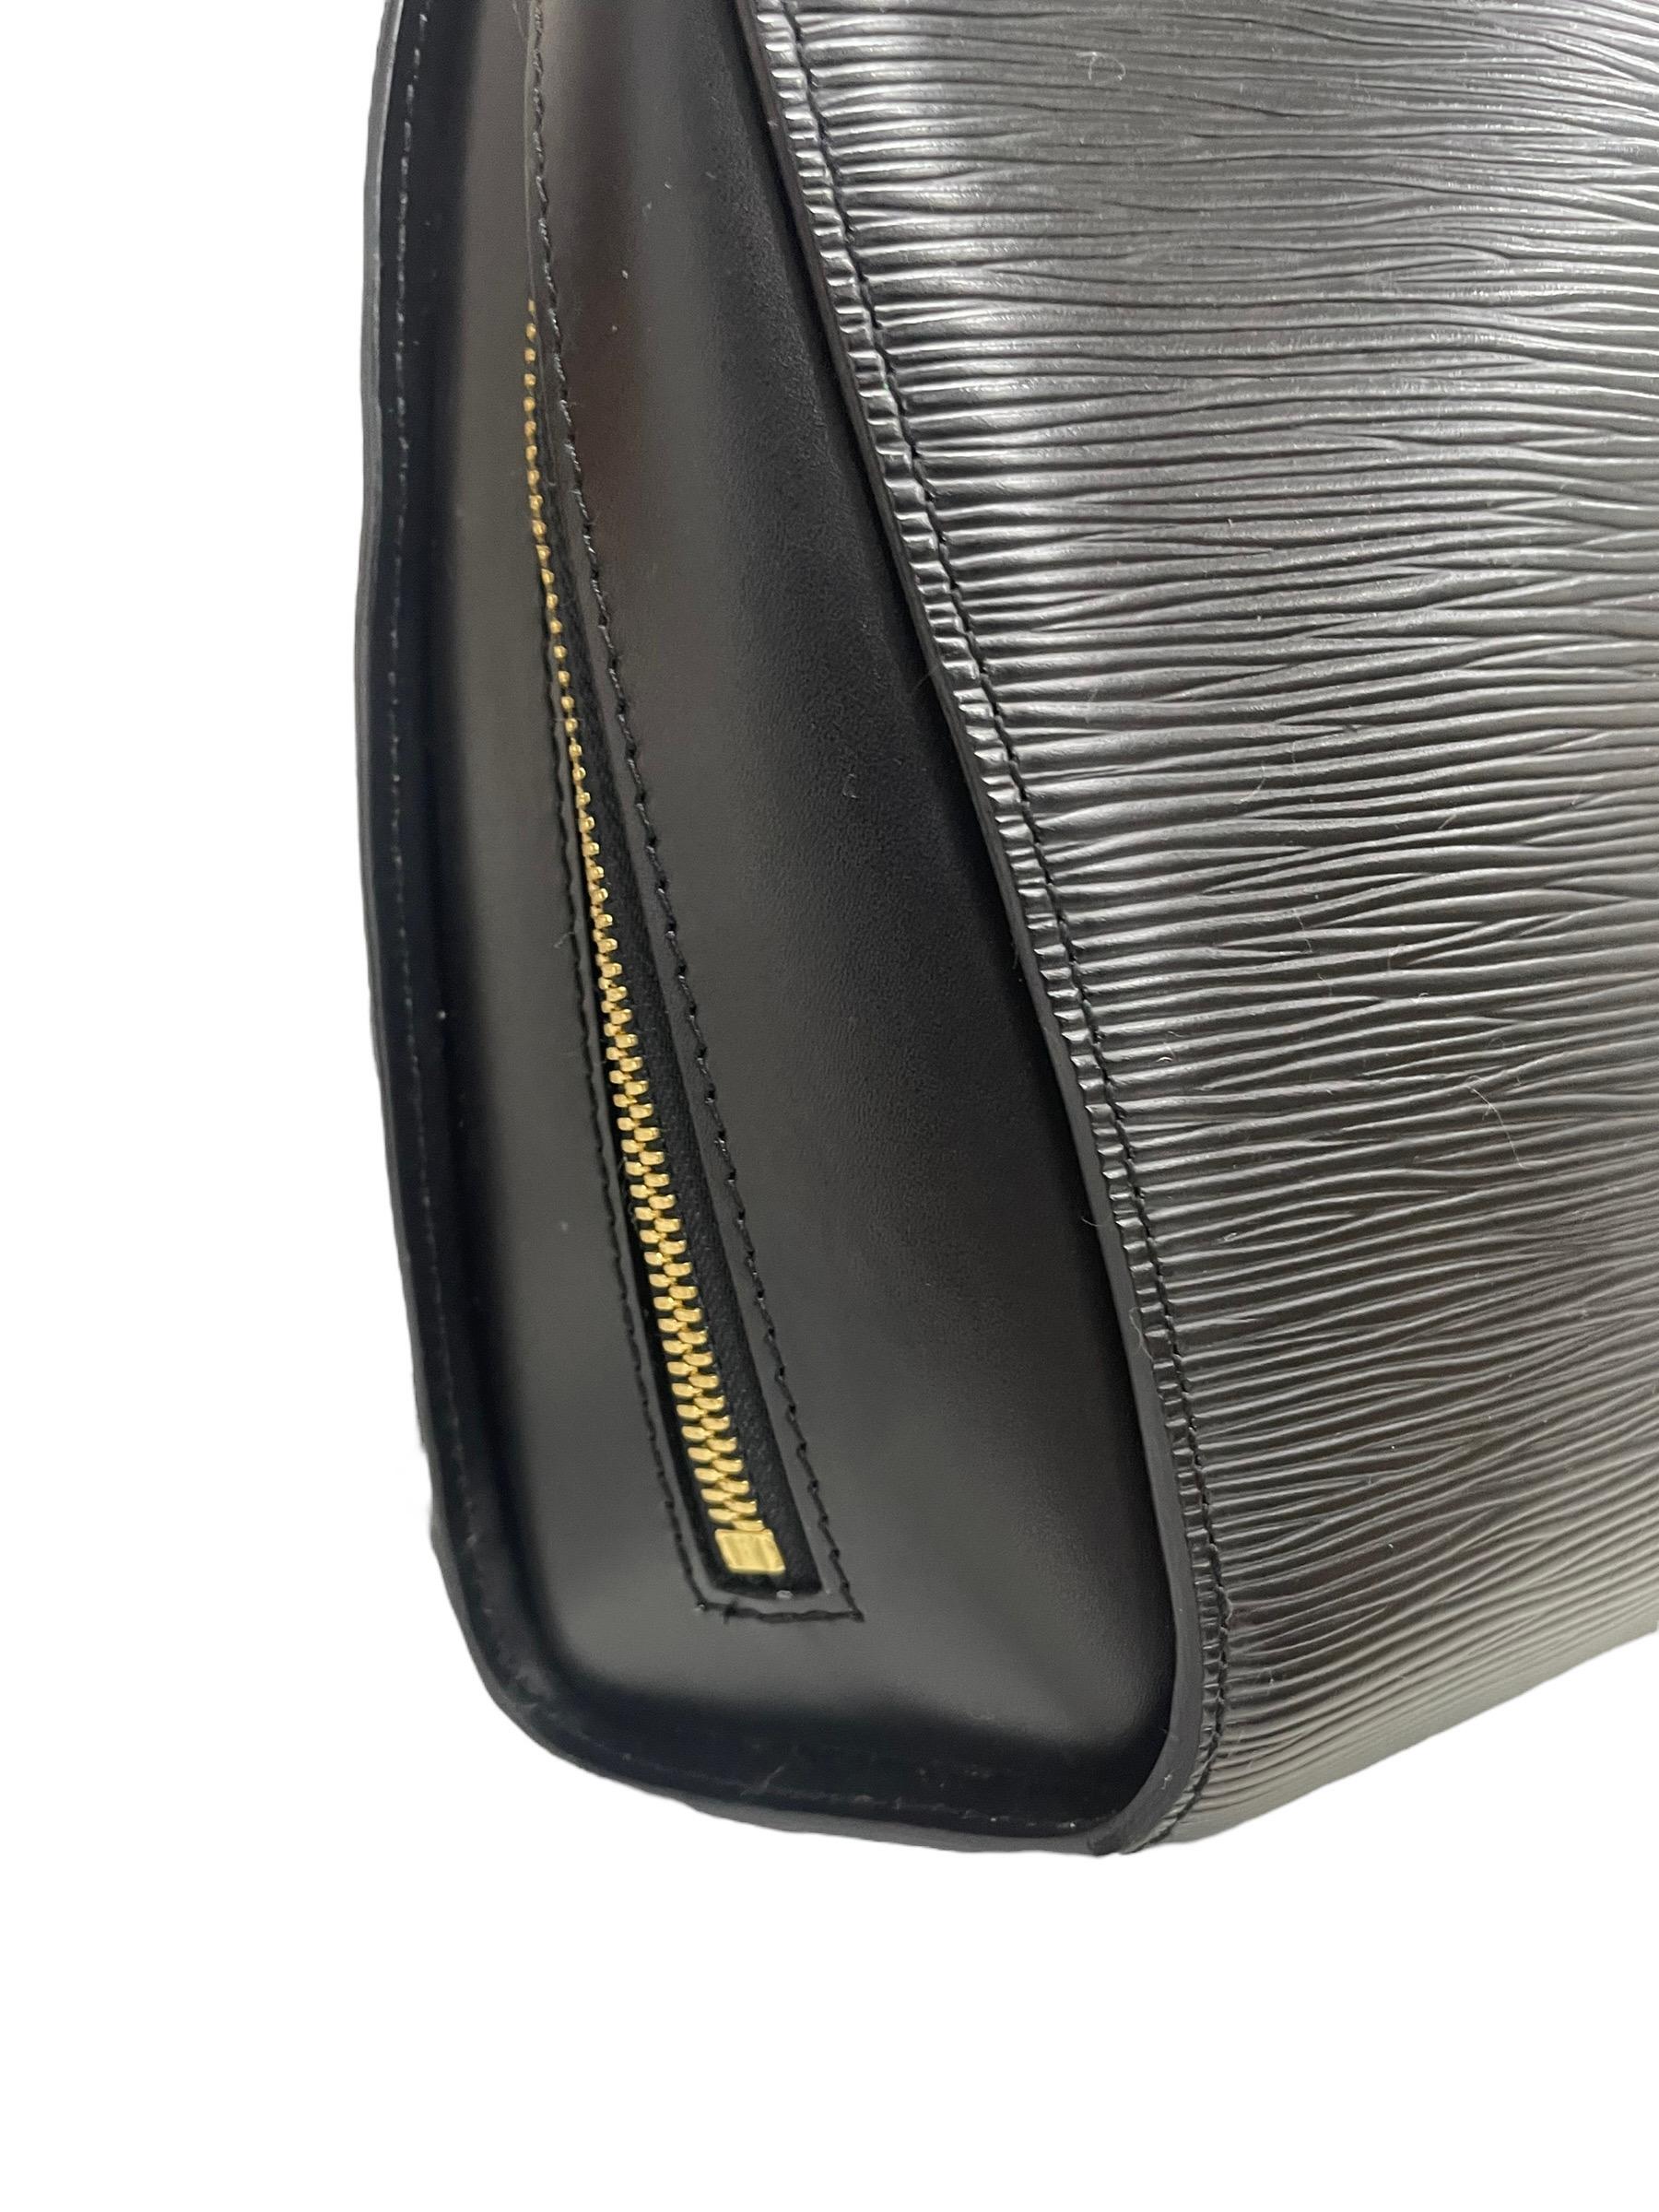 Zaino Firmato Louis Vuitton, modello Mabillon, misura PM, realizzato in pelle epi nera con hardware dorati. Presenta una tasca sul dietro e un’apertura superiore entrambe con zip. Internamente rivestito in alcantara grigio, con tasca senza zip e